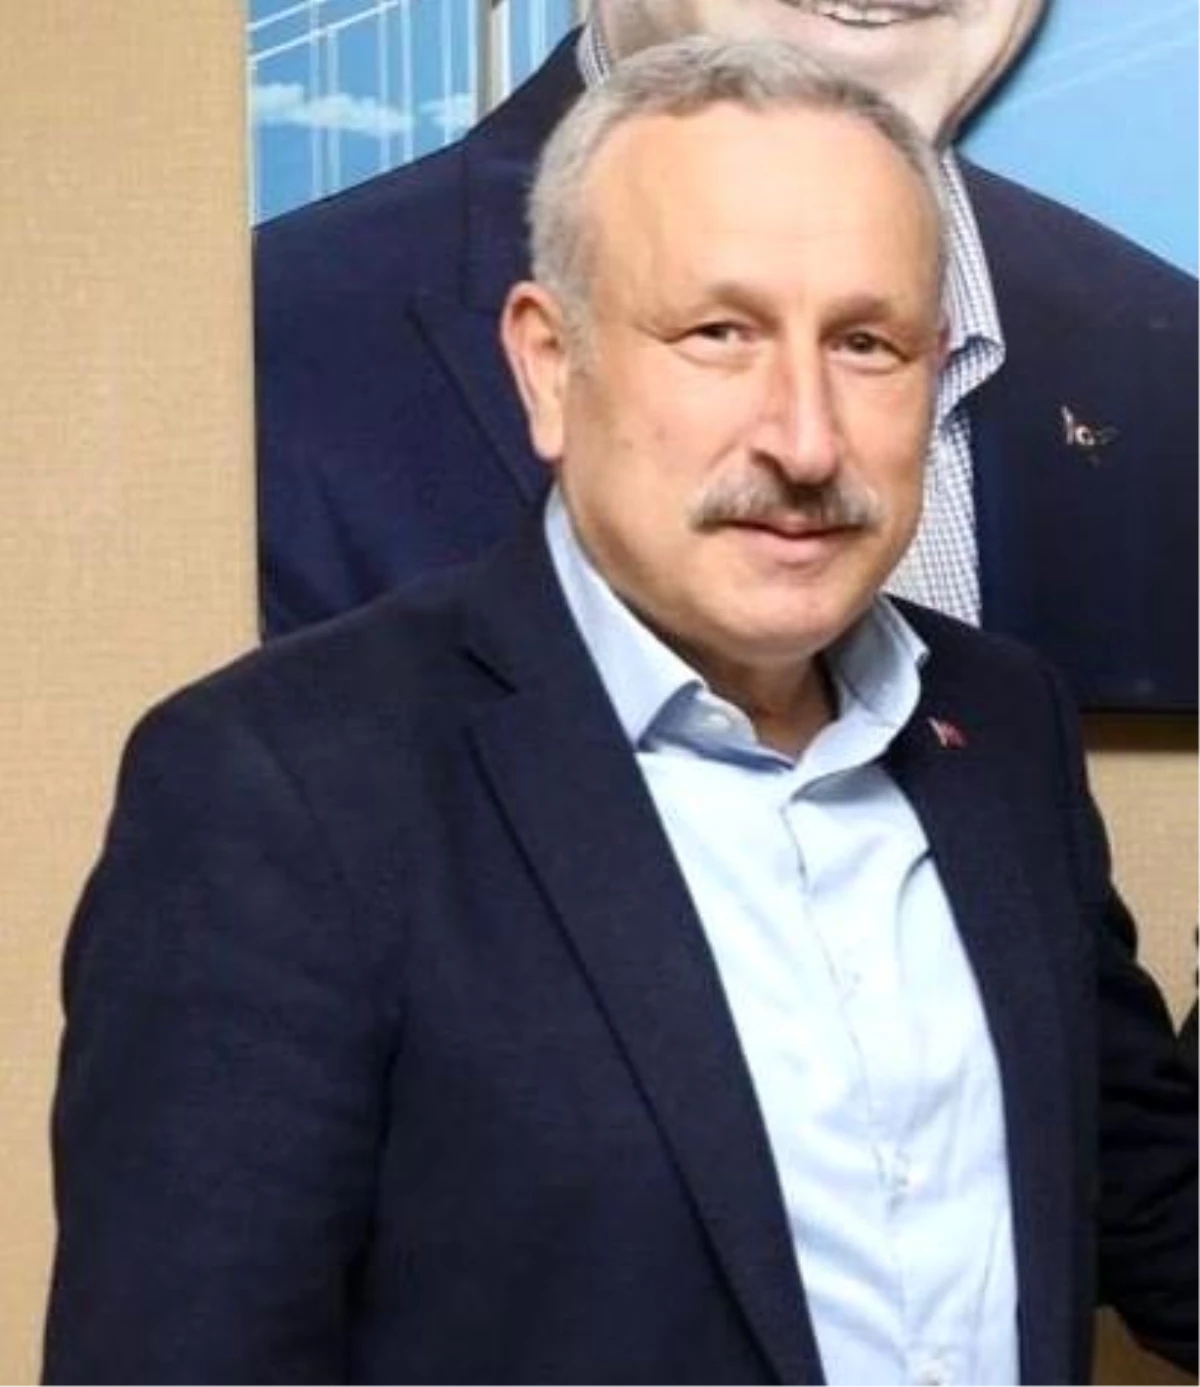 Ali Haydar Bulut Kocaeli Büyükşehir Belediyesi Genel Sekreter Yardımcılığına Getirildi